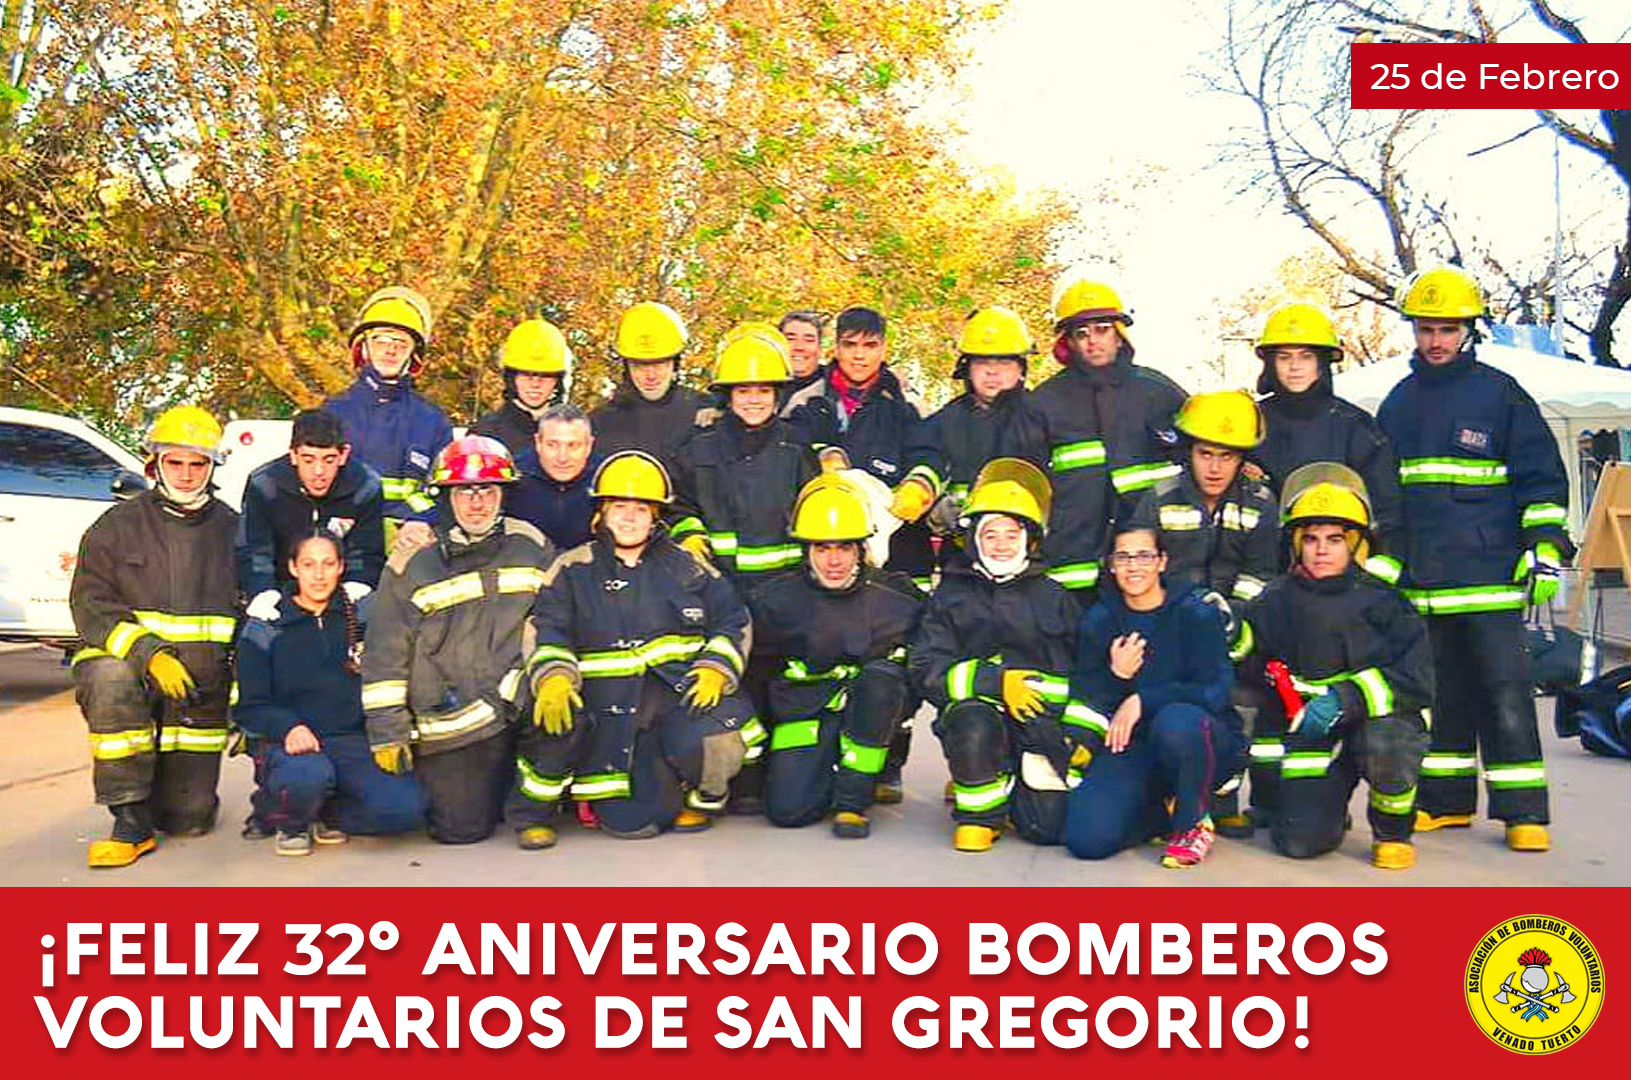 Feliz 32º aniversario bomberos voluntarios de San Gregorio